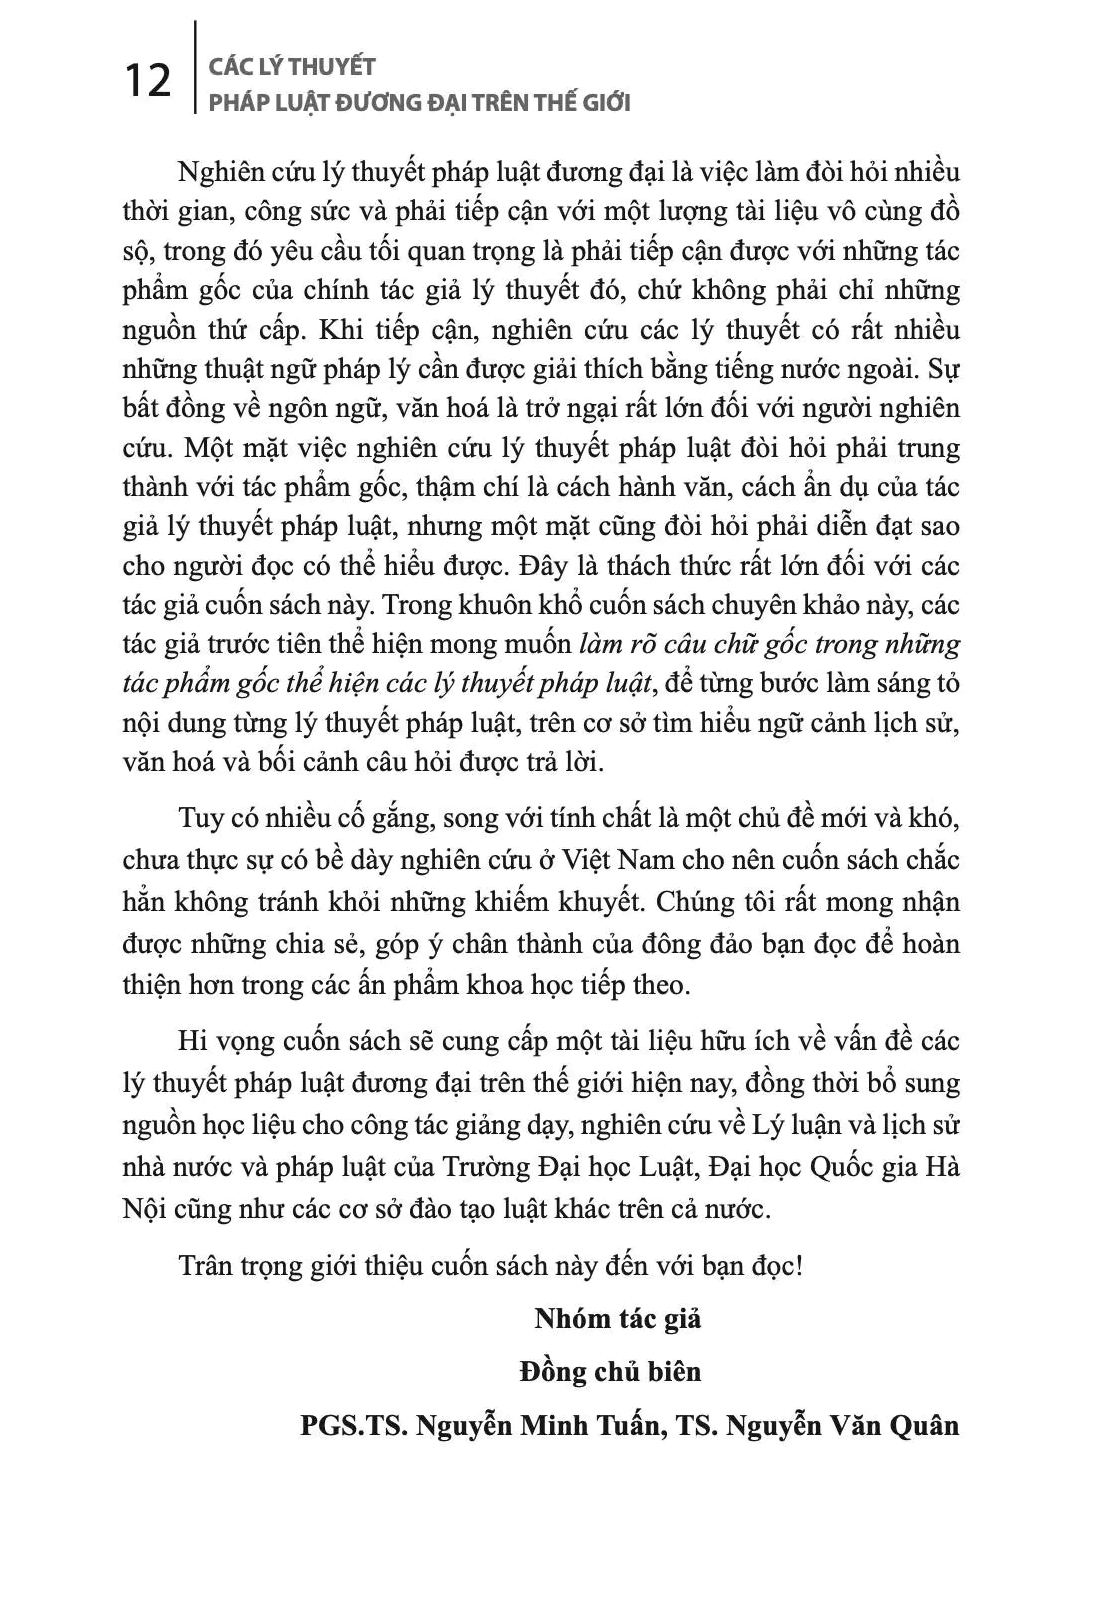 CÁC LÝ THUYẾT PHÁP LUẬT ĐƯƠNG ĐẠI TRÊN THẾ GIỚI (Sách chuyên khảo) - PGS. TS. Nguyễn Minh Tuấn, TS. Nguyễn Văn Quân (Đồng chủ biên) - (bìa mềm)